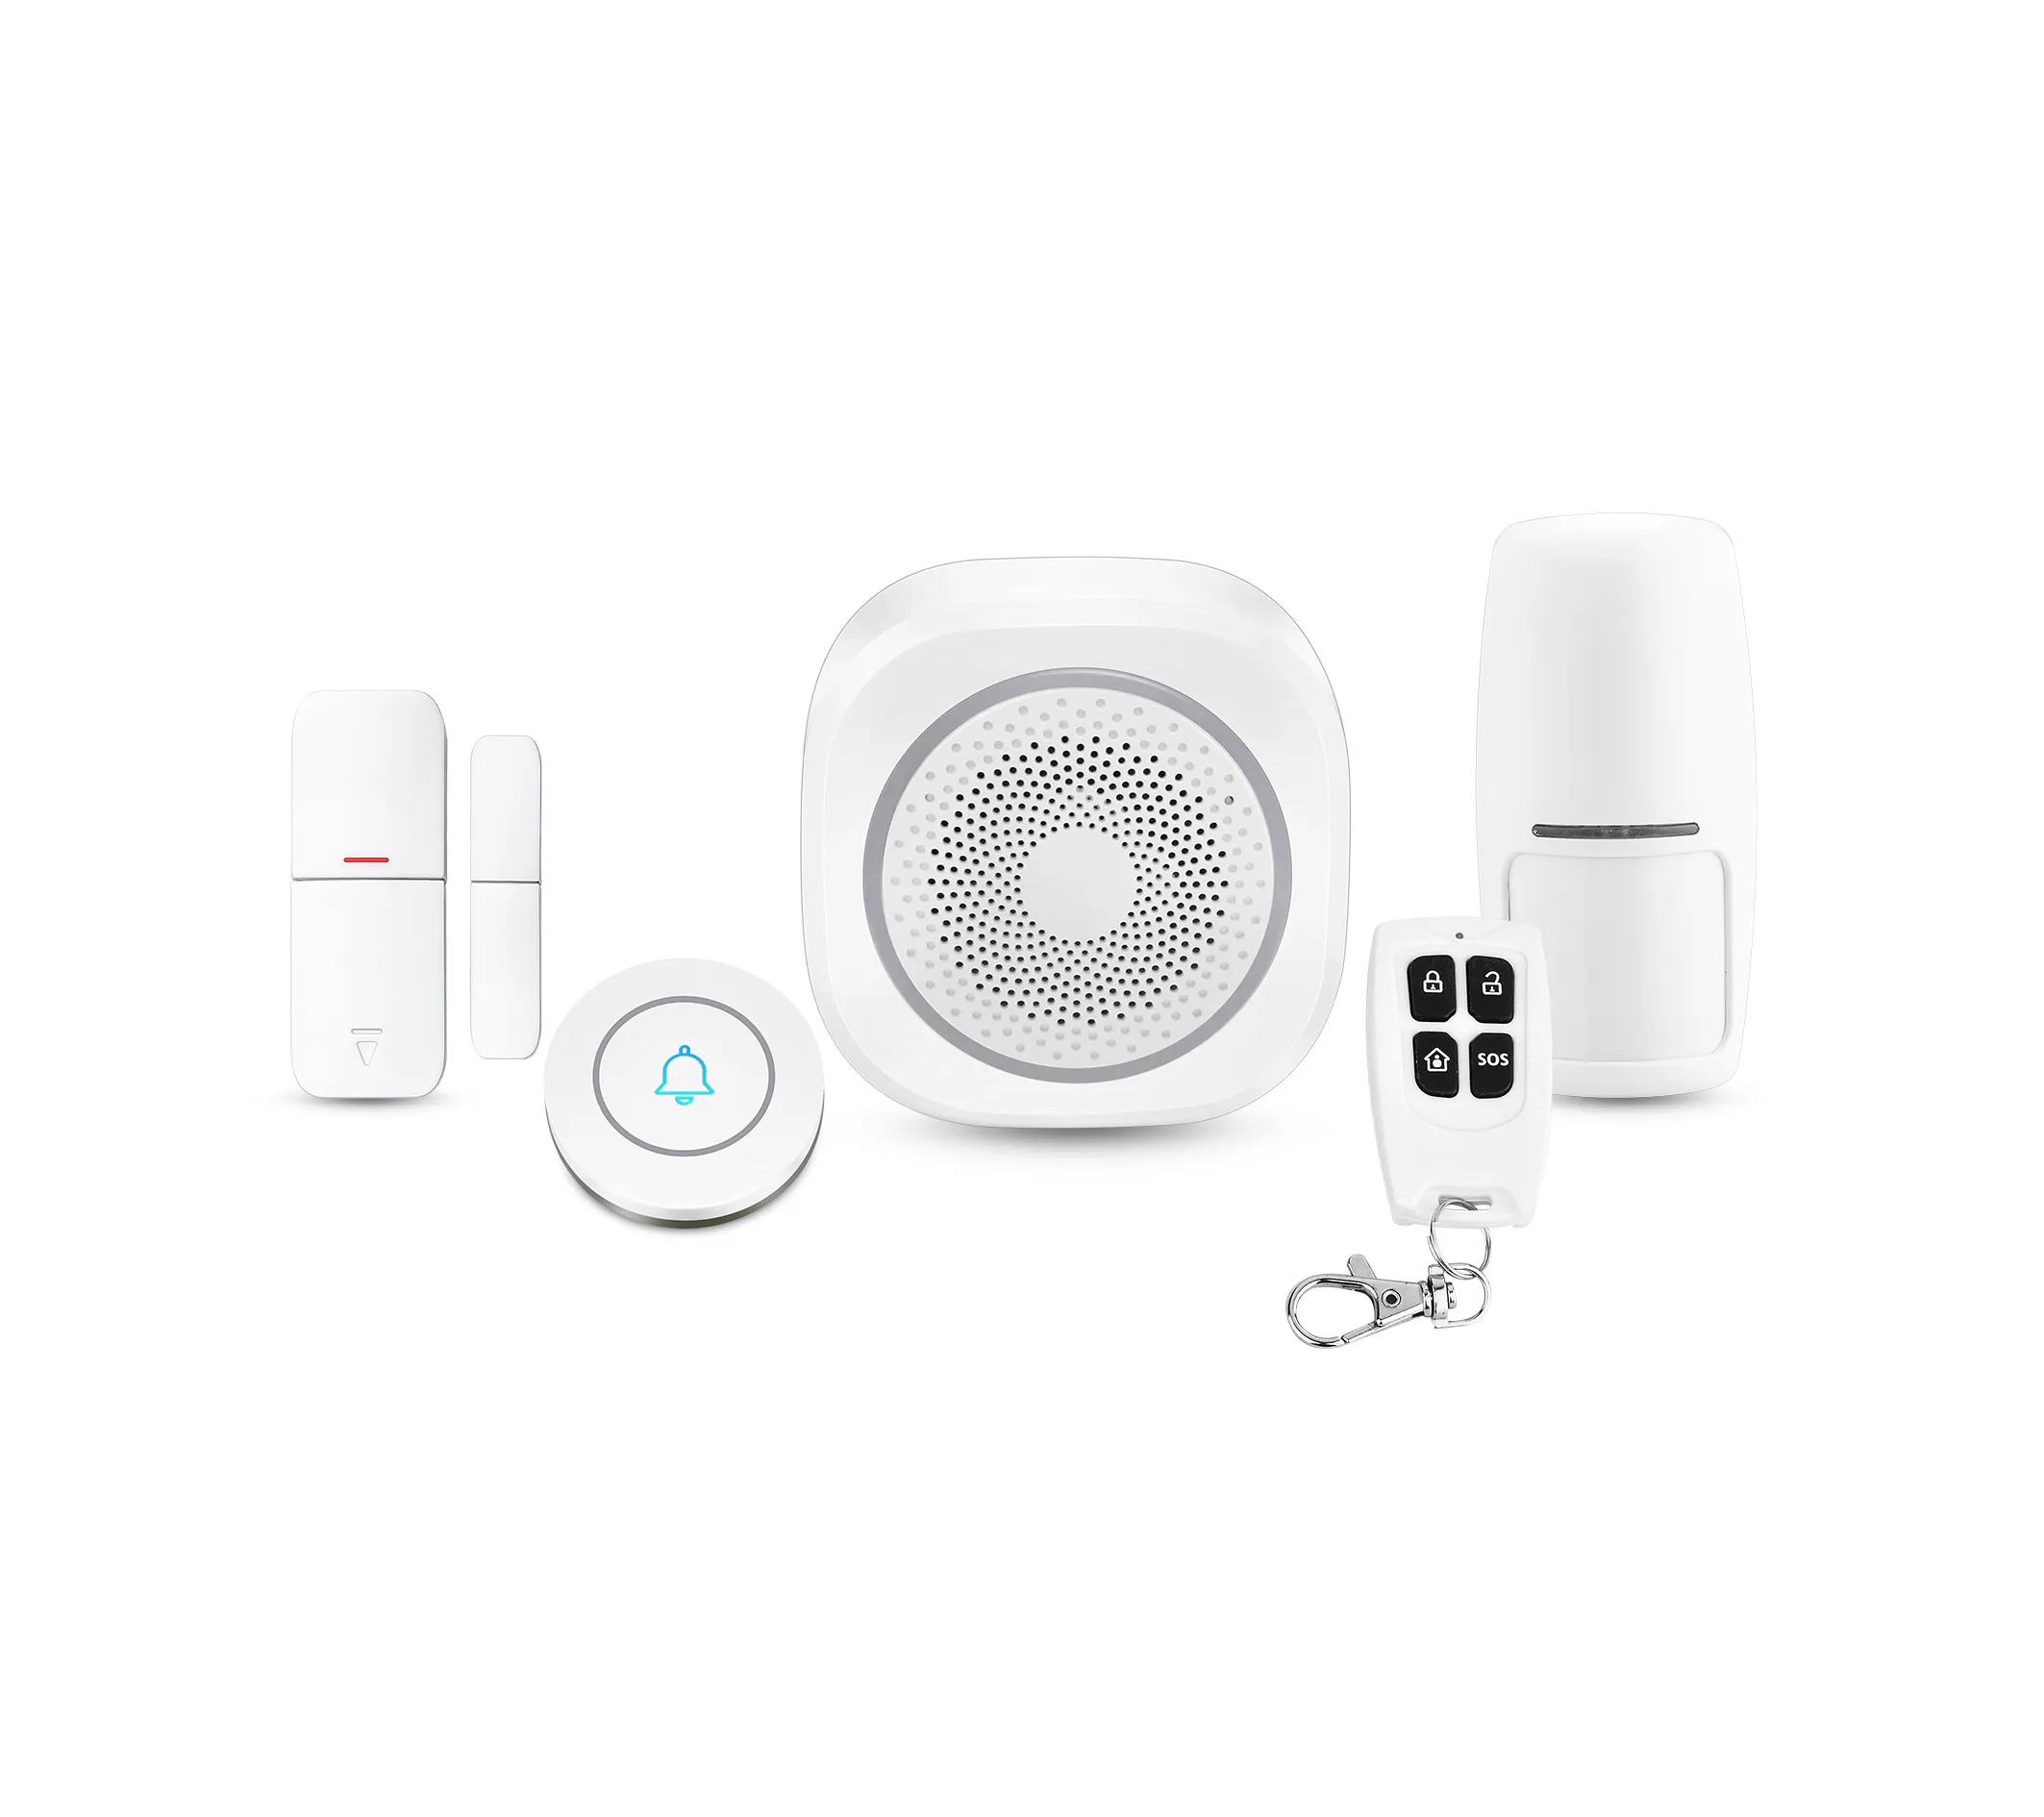 Tuya Smart Home Sicherheits alarm Sirenen system Drahtlose WiFi Einbrecher Sirenen alarme